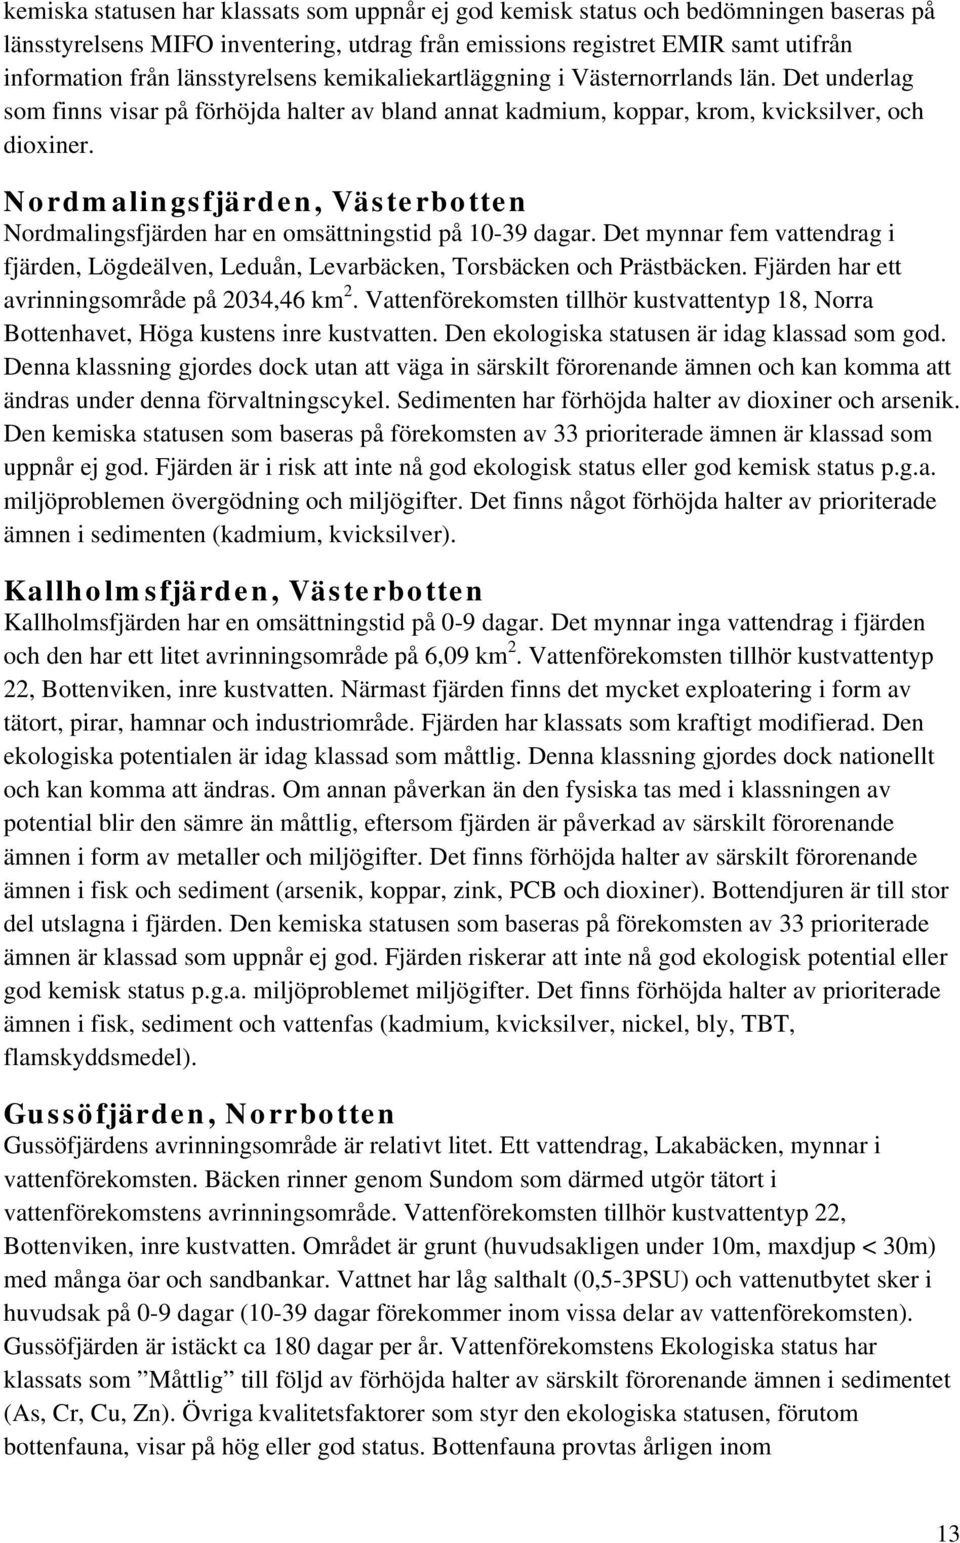 Nordmalingsfjärden, Västerbotten Nordmalingsfjärden har en omsättningstid på 10-39 dagar. Det mynnar fem vattendrag i fjärden, Lögdeälven, Leduån, Levarbäcken, Torsbäcken och Prästbäcken.